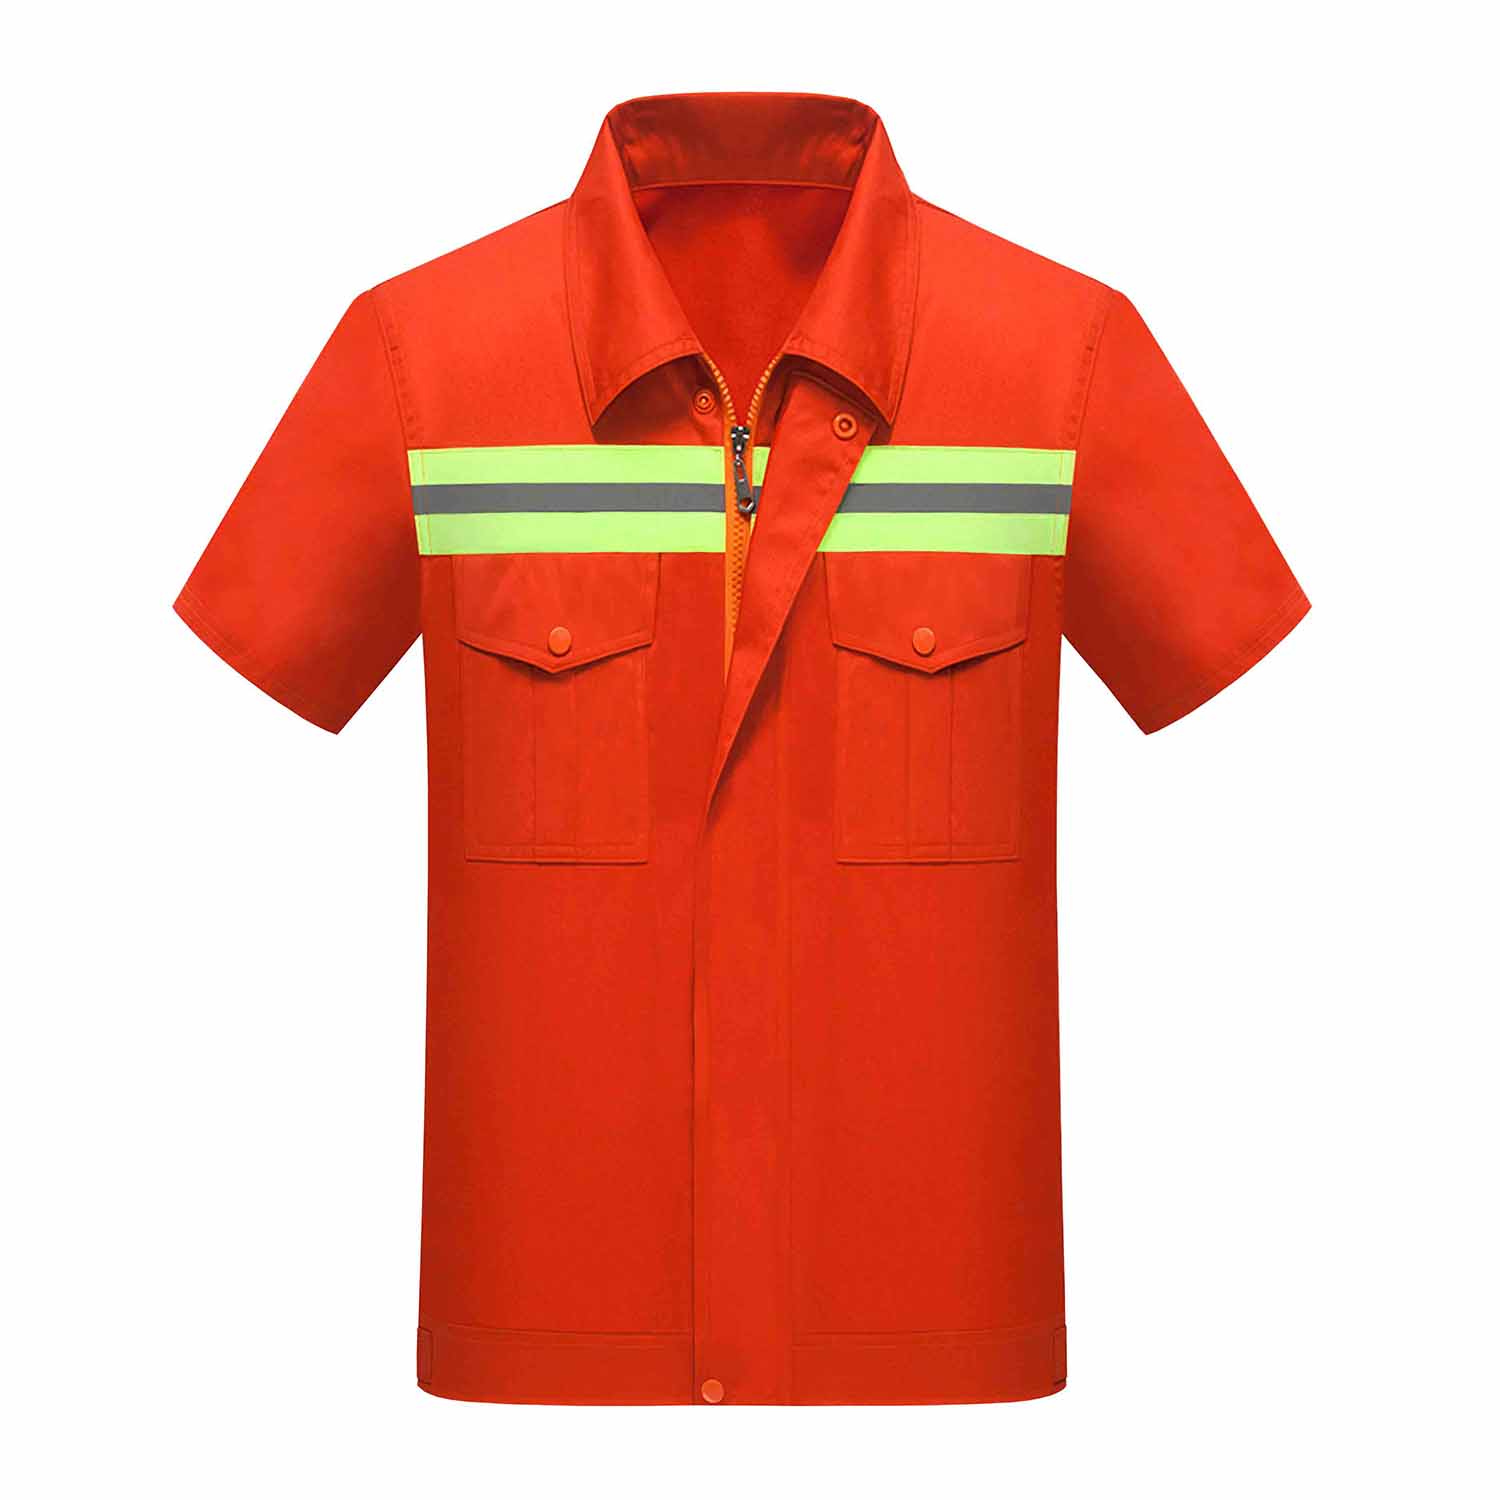 夏季环卫工作服套装定做_订制夏季环卫工作服套装厂家